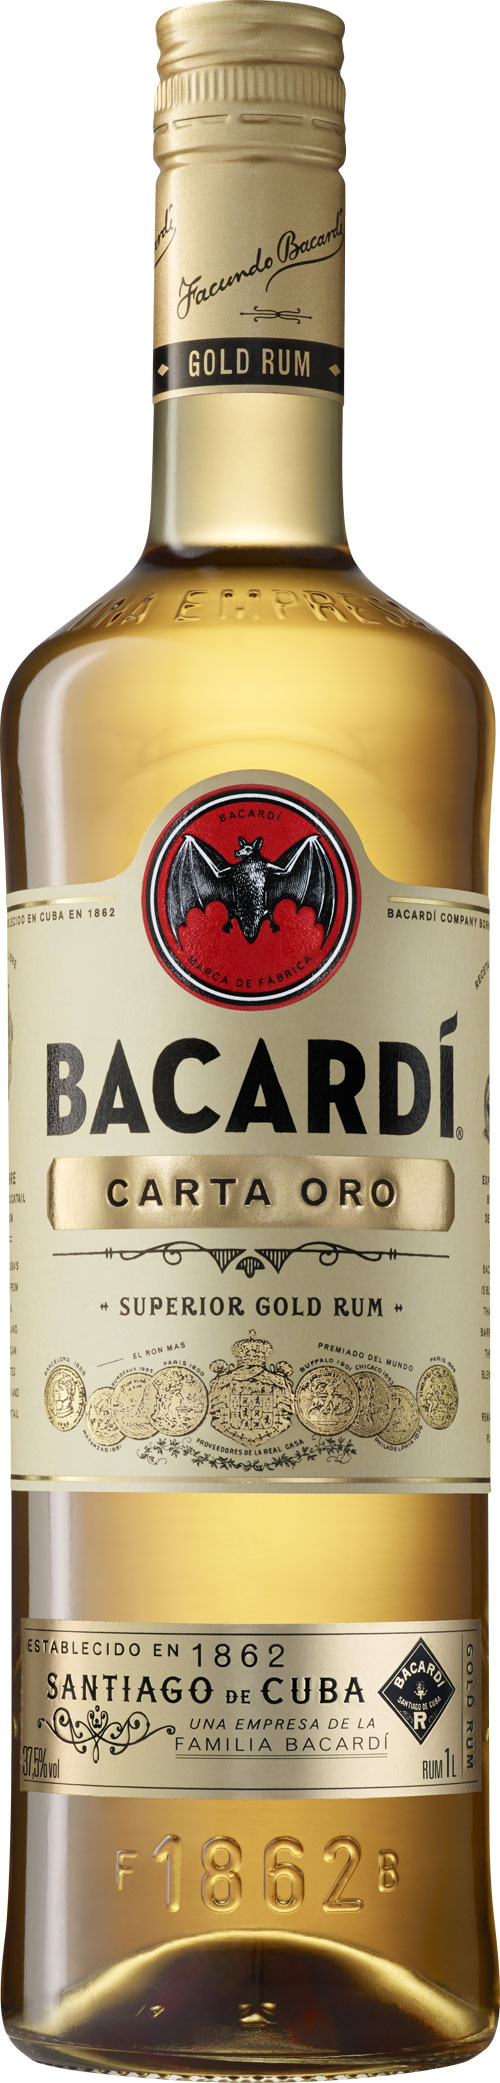 BACARDI_CARTAORO